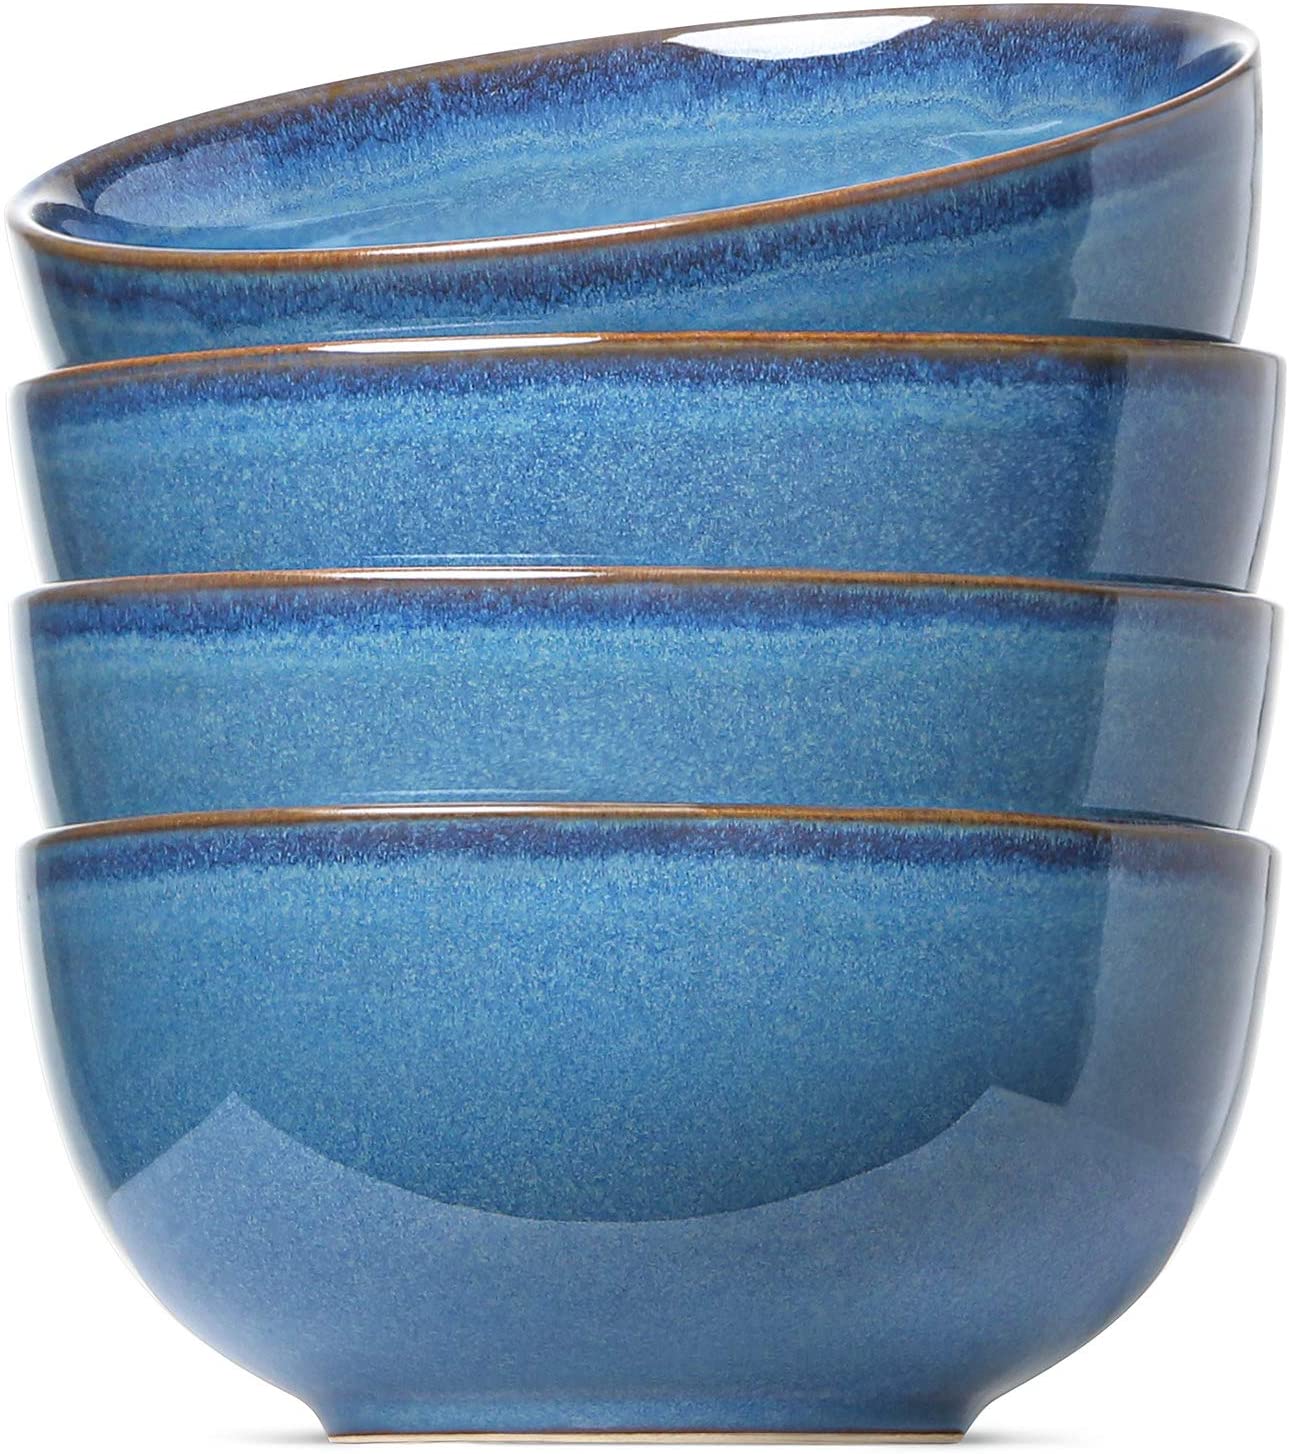 LE TAUCI Ceramic Bowl Set